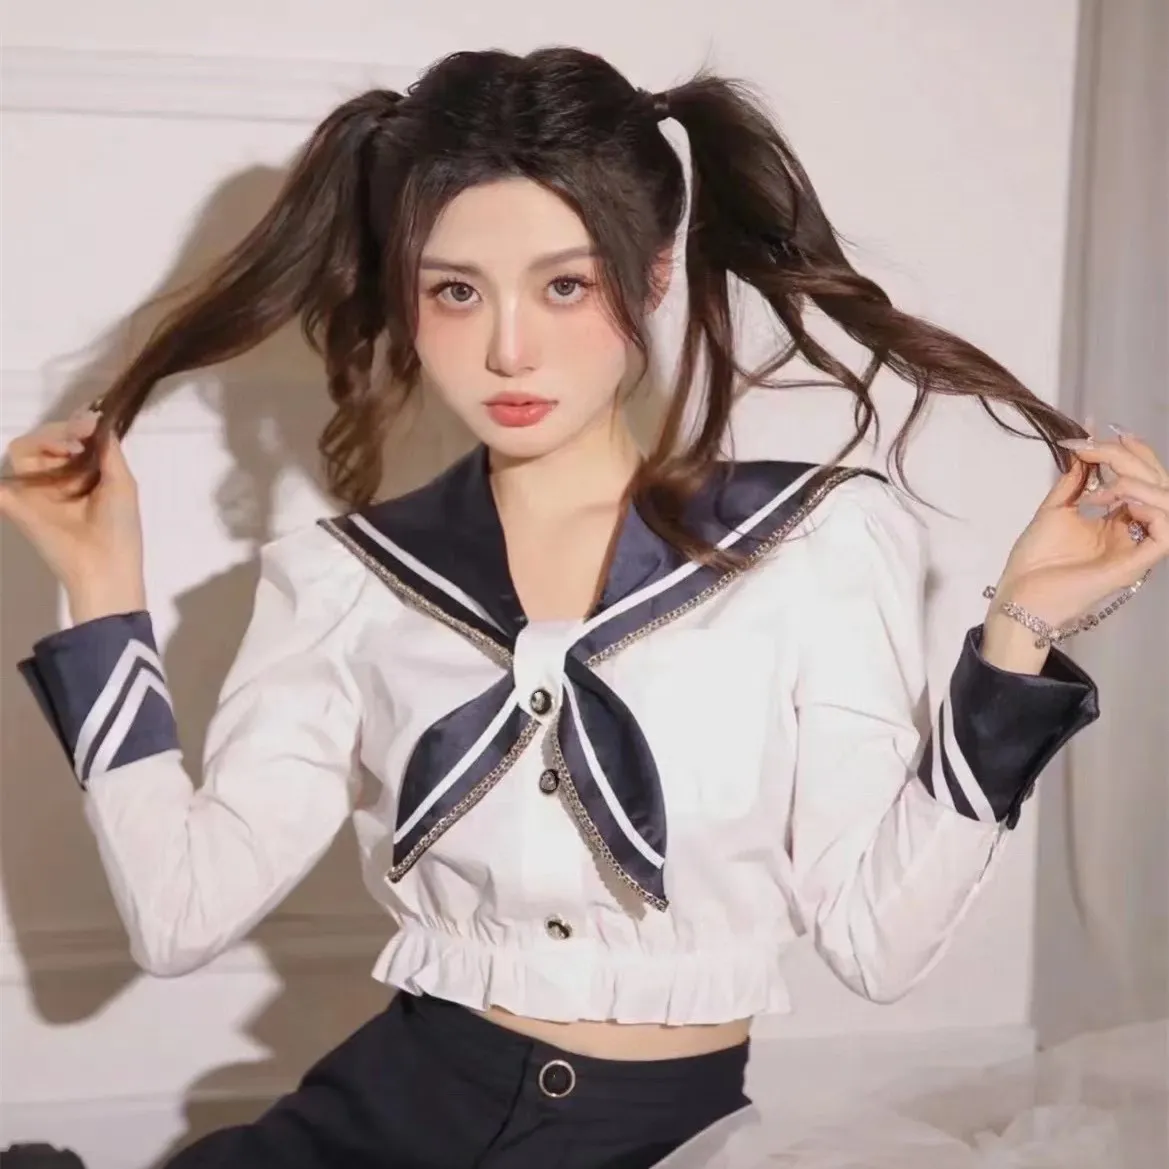 Erken Bahar Kadın Donanması Tarzı Kontrast Renkli Gömlek Fırlatılmış etek ve bel cinched kısa üst ile